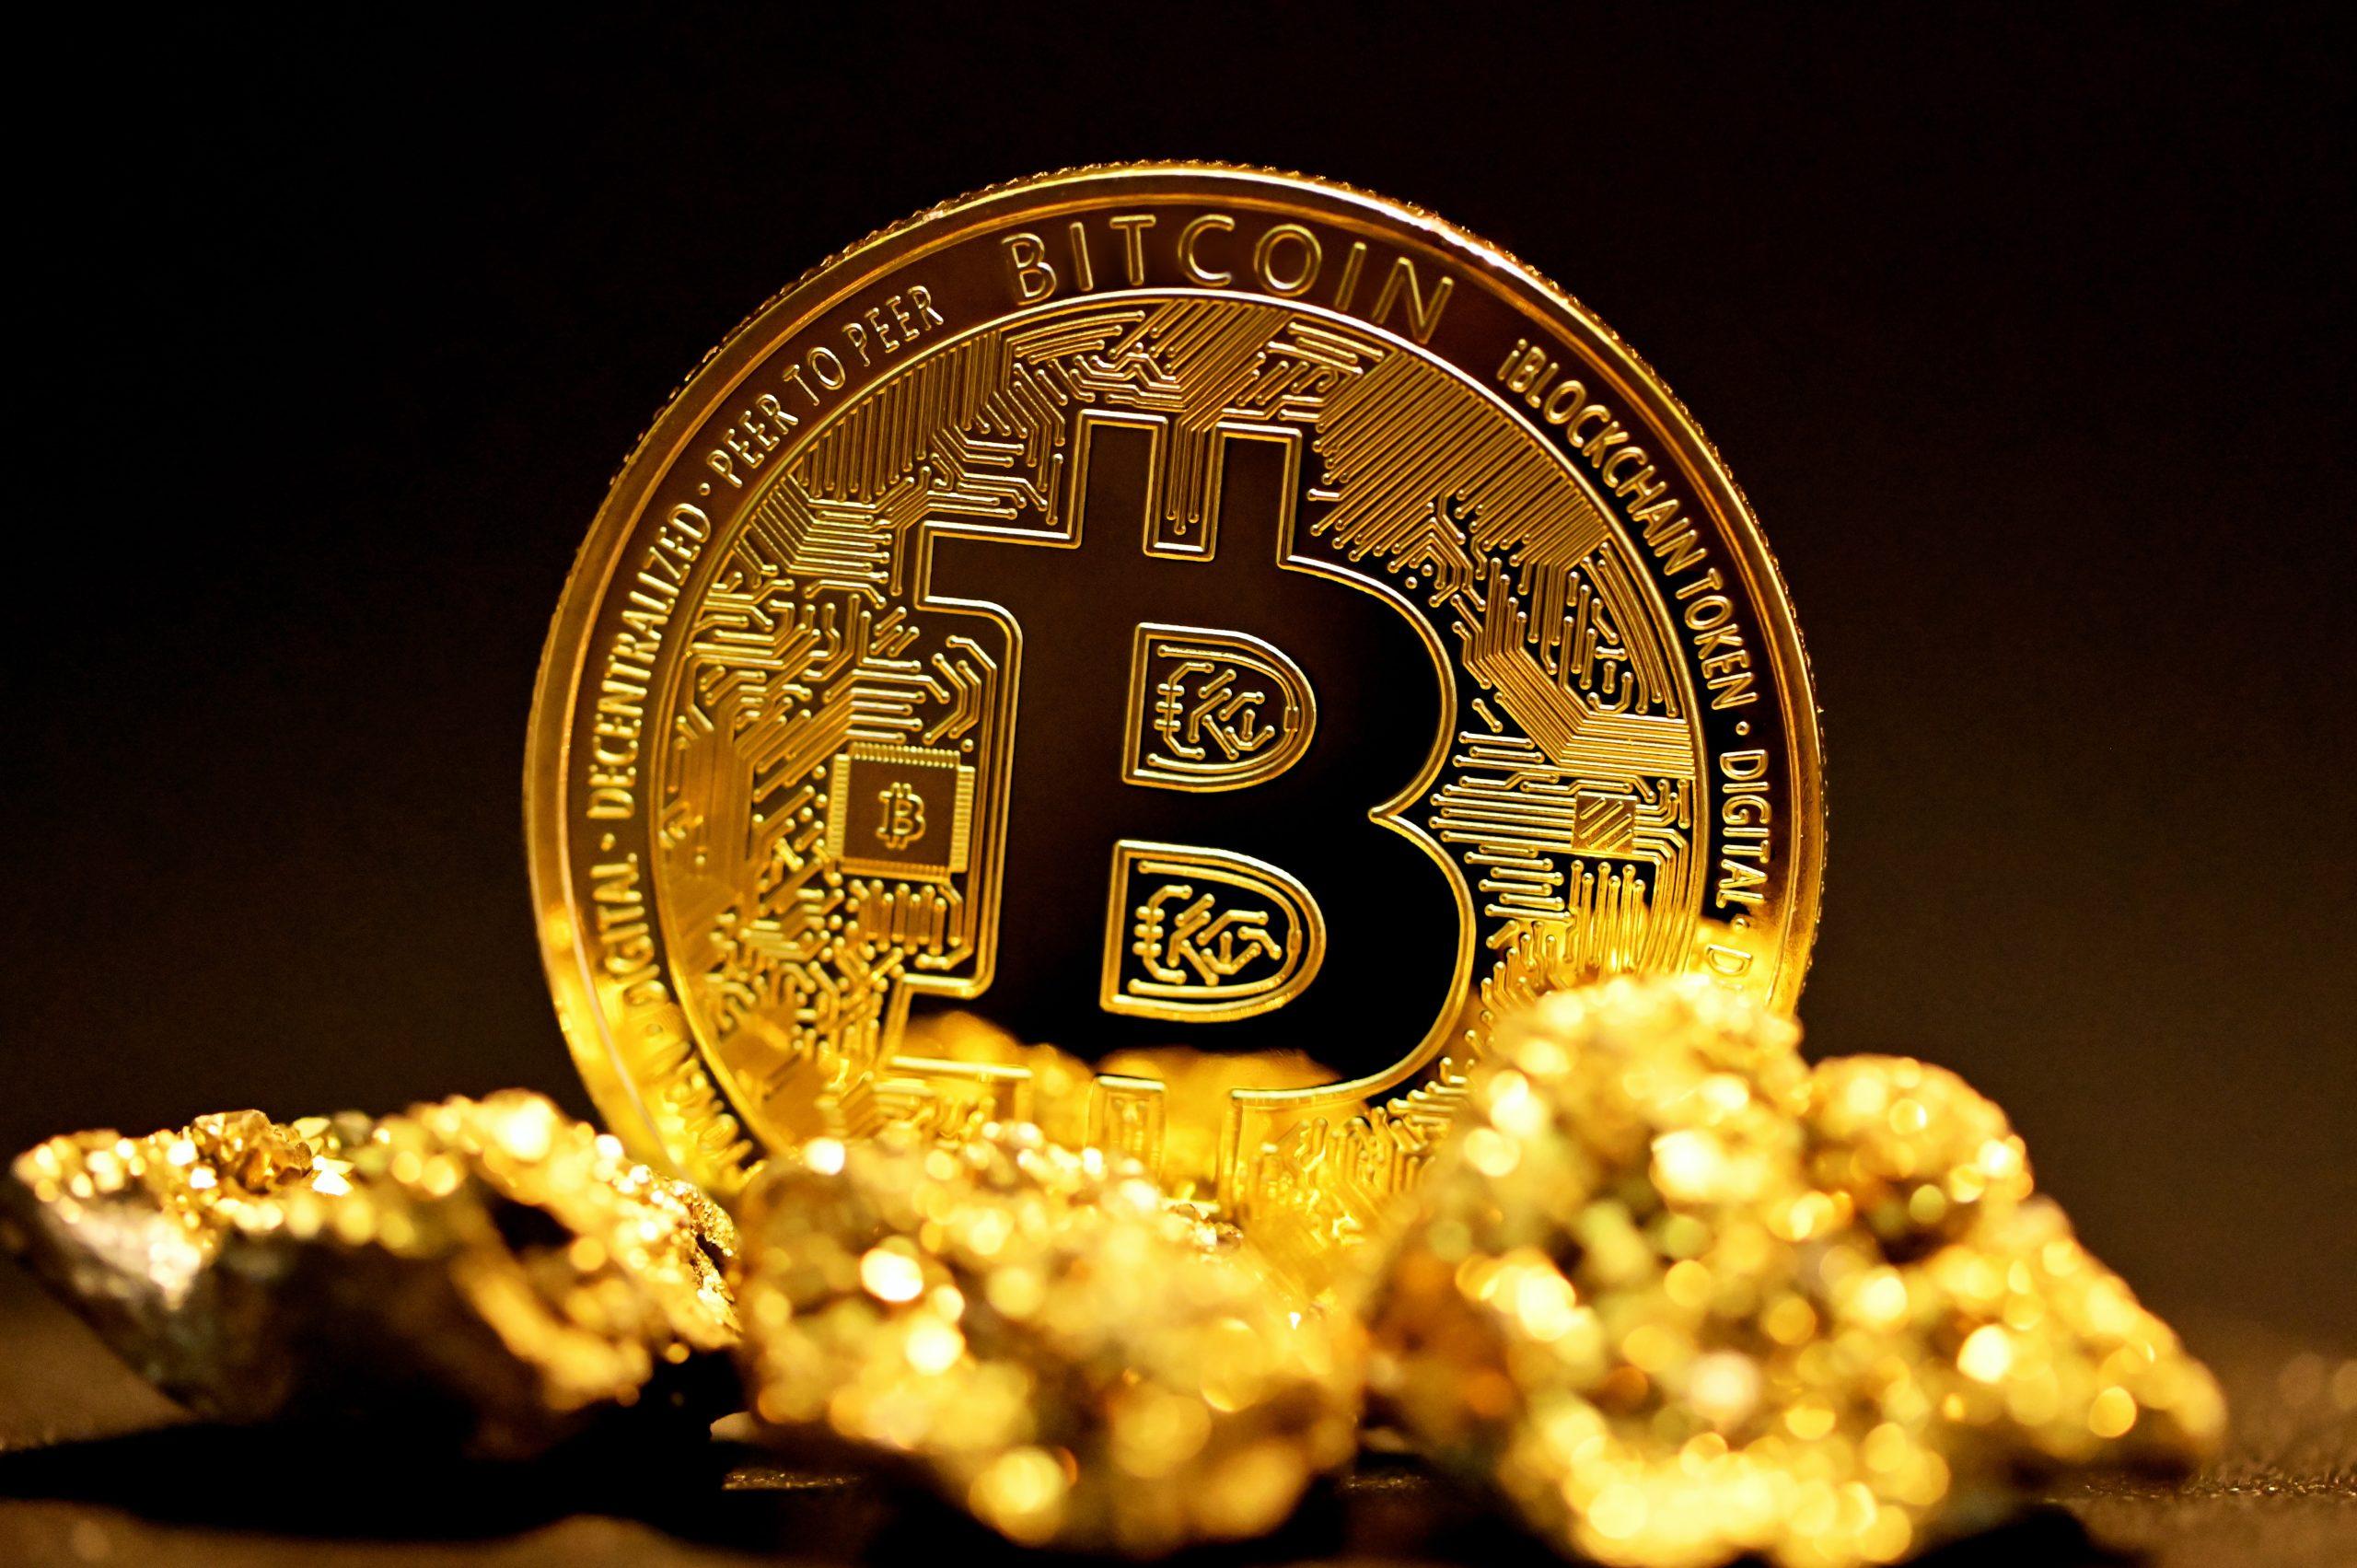 De rol van Goud en Bitcoin in een "Reset" scenario